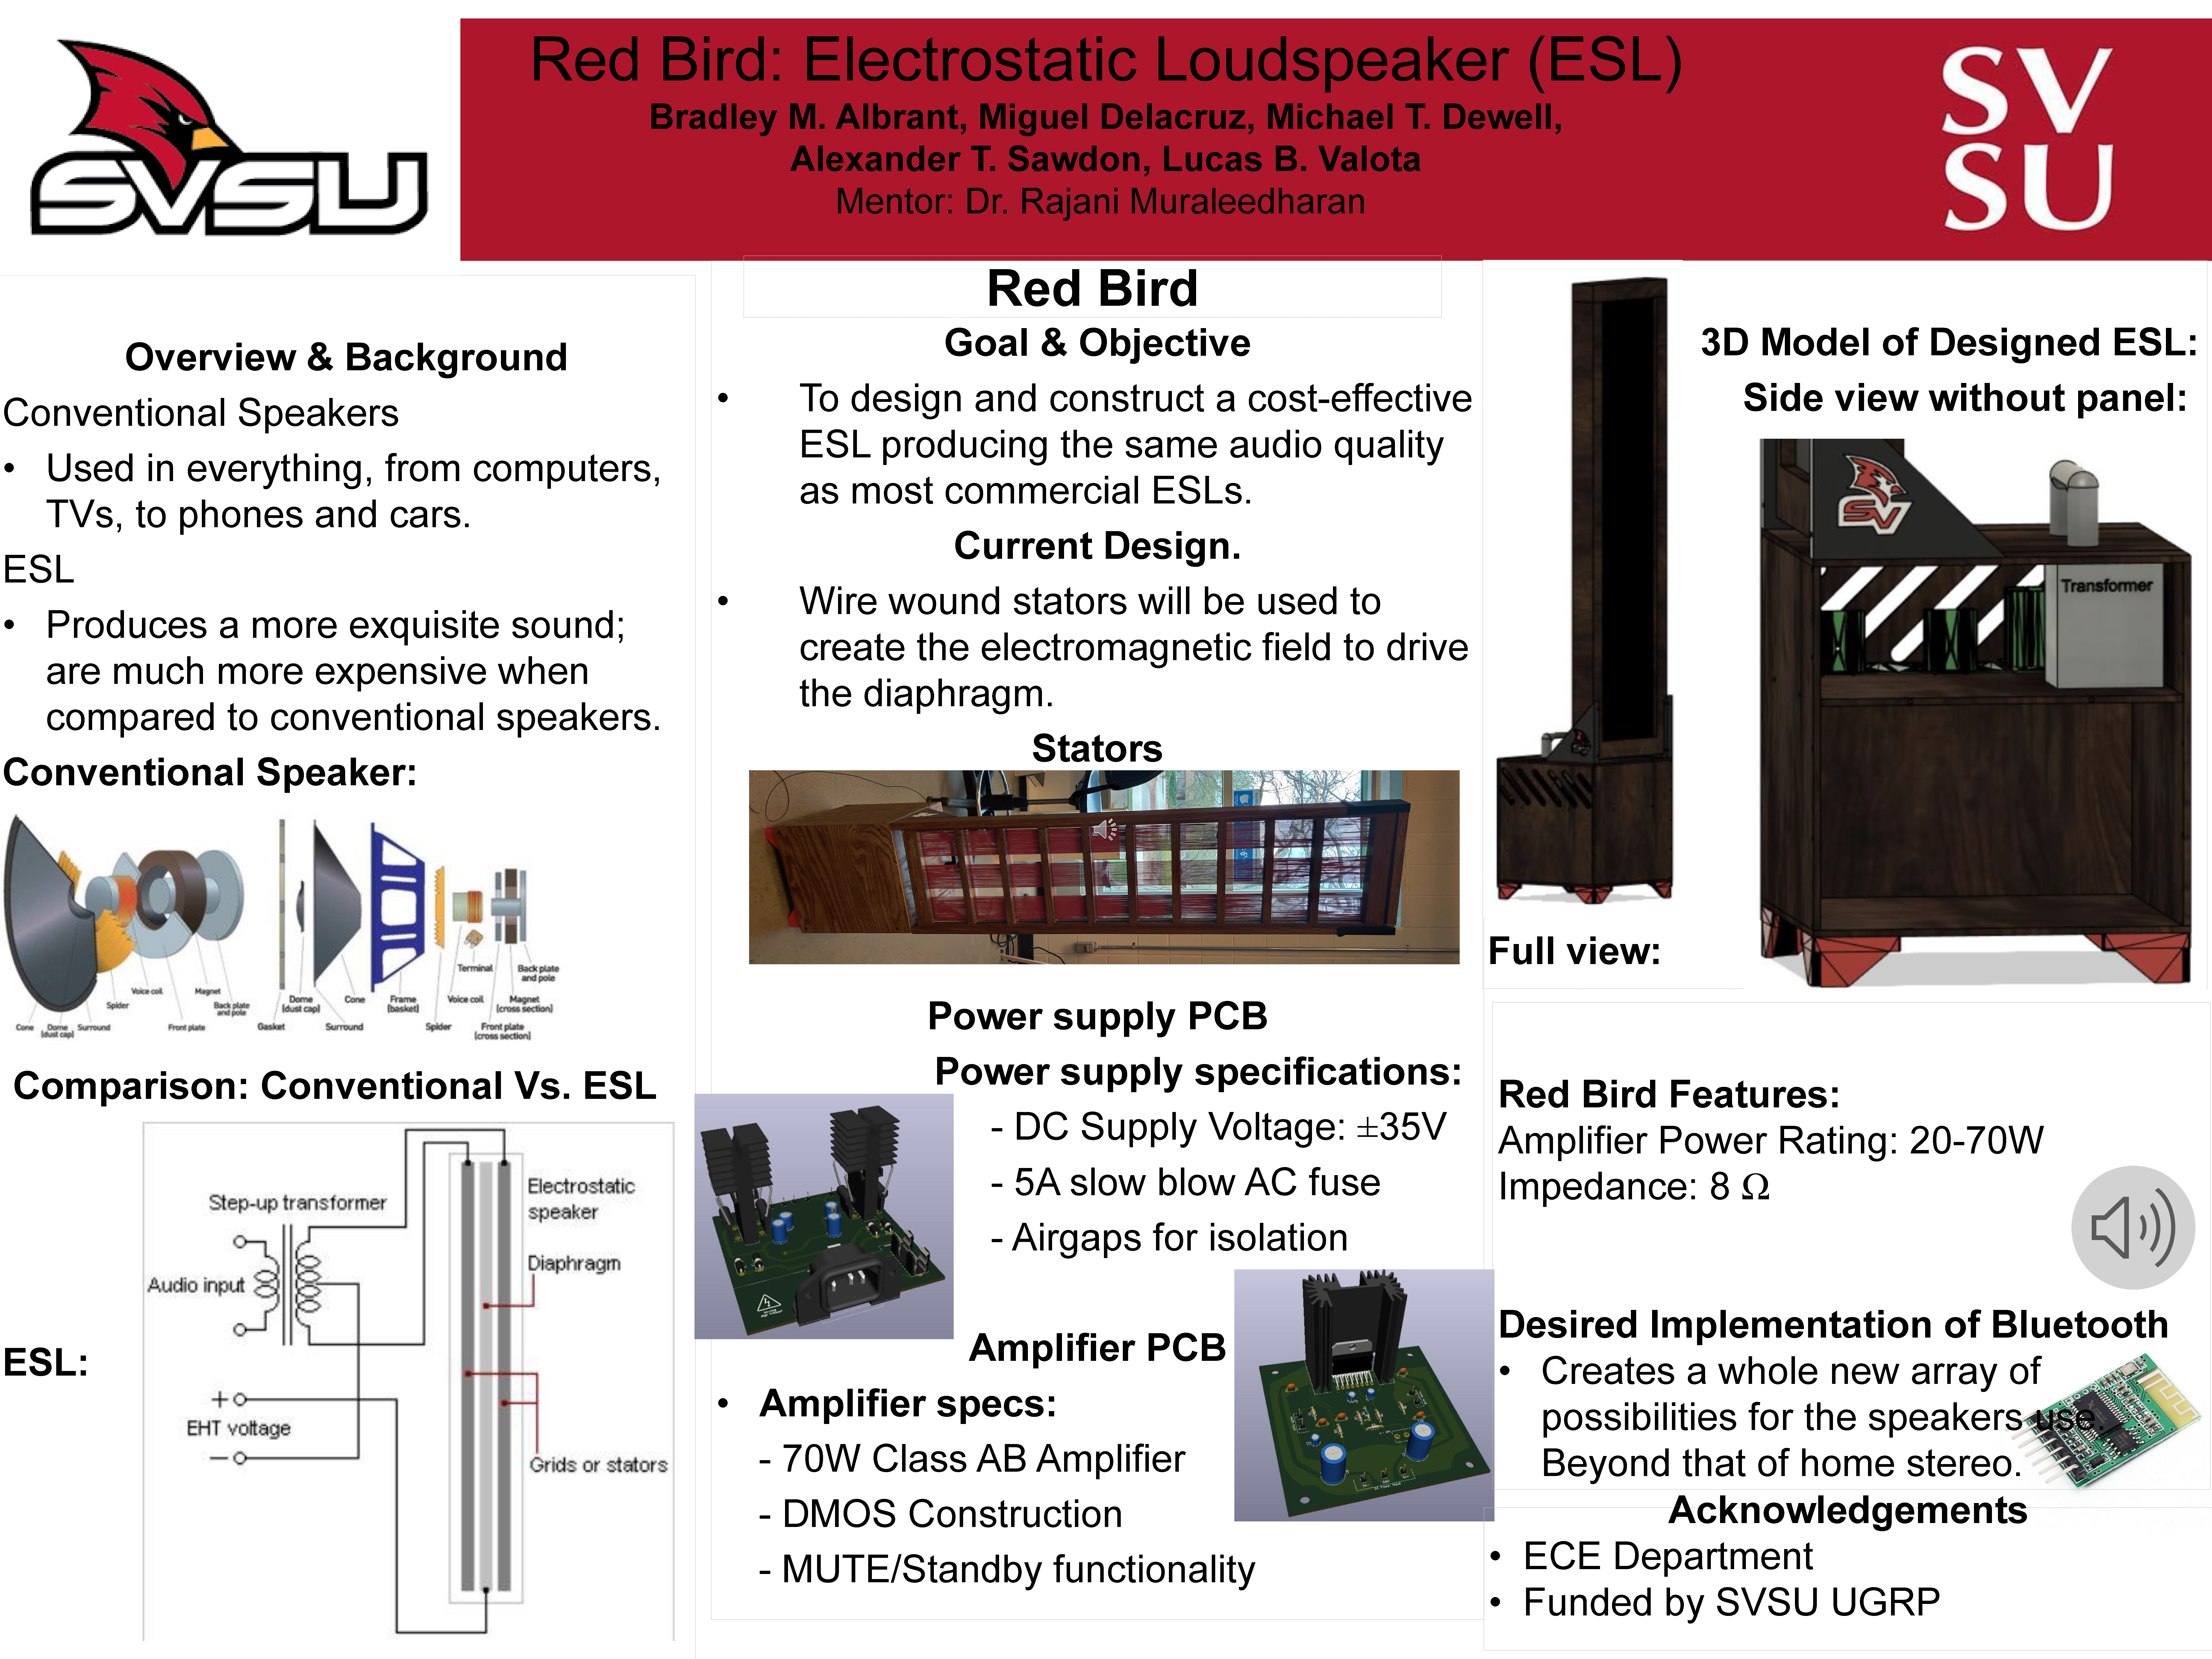 Design and Implementation of an Electrostatic Loudspeaker